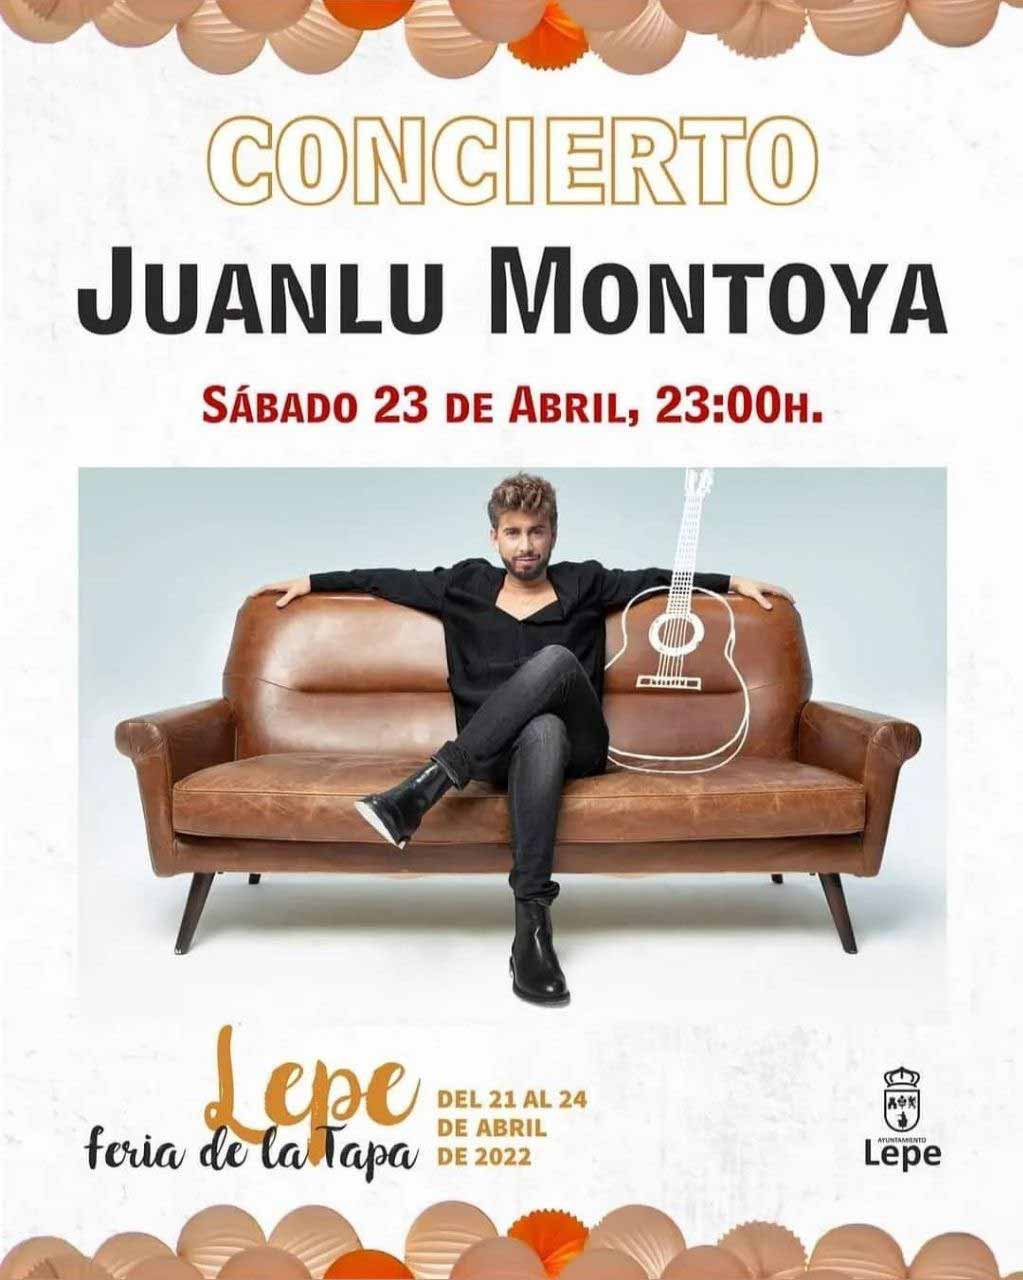 Juanlu montoya en concierto 23 de abril feria de la tapa Lepe 2022